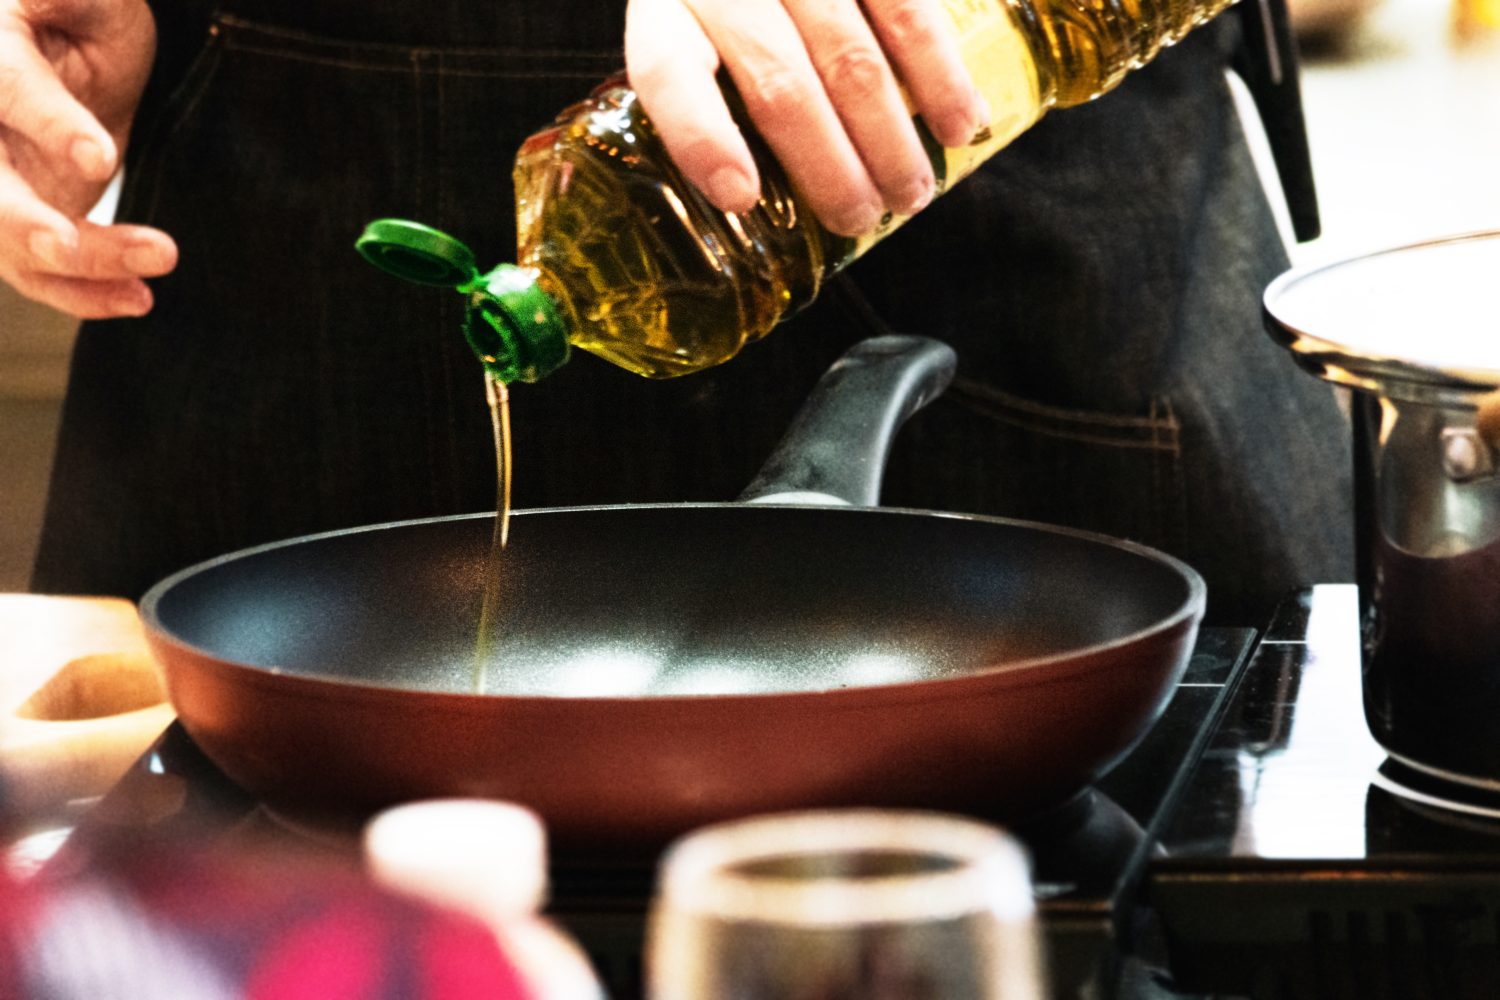 chef vertiendo aceite en una sartén, chef cocinando comida en la cocina